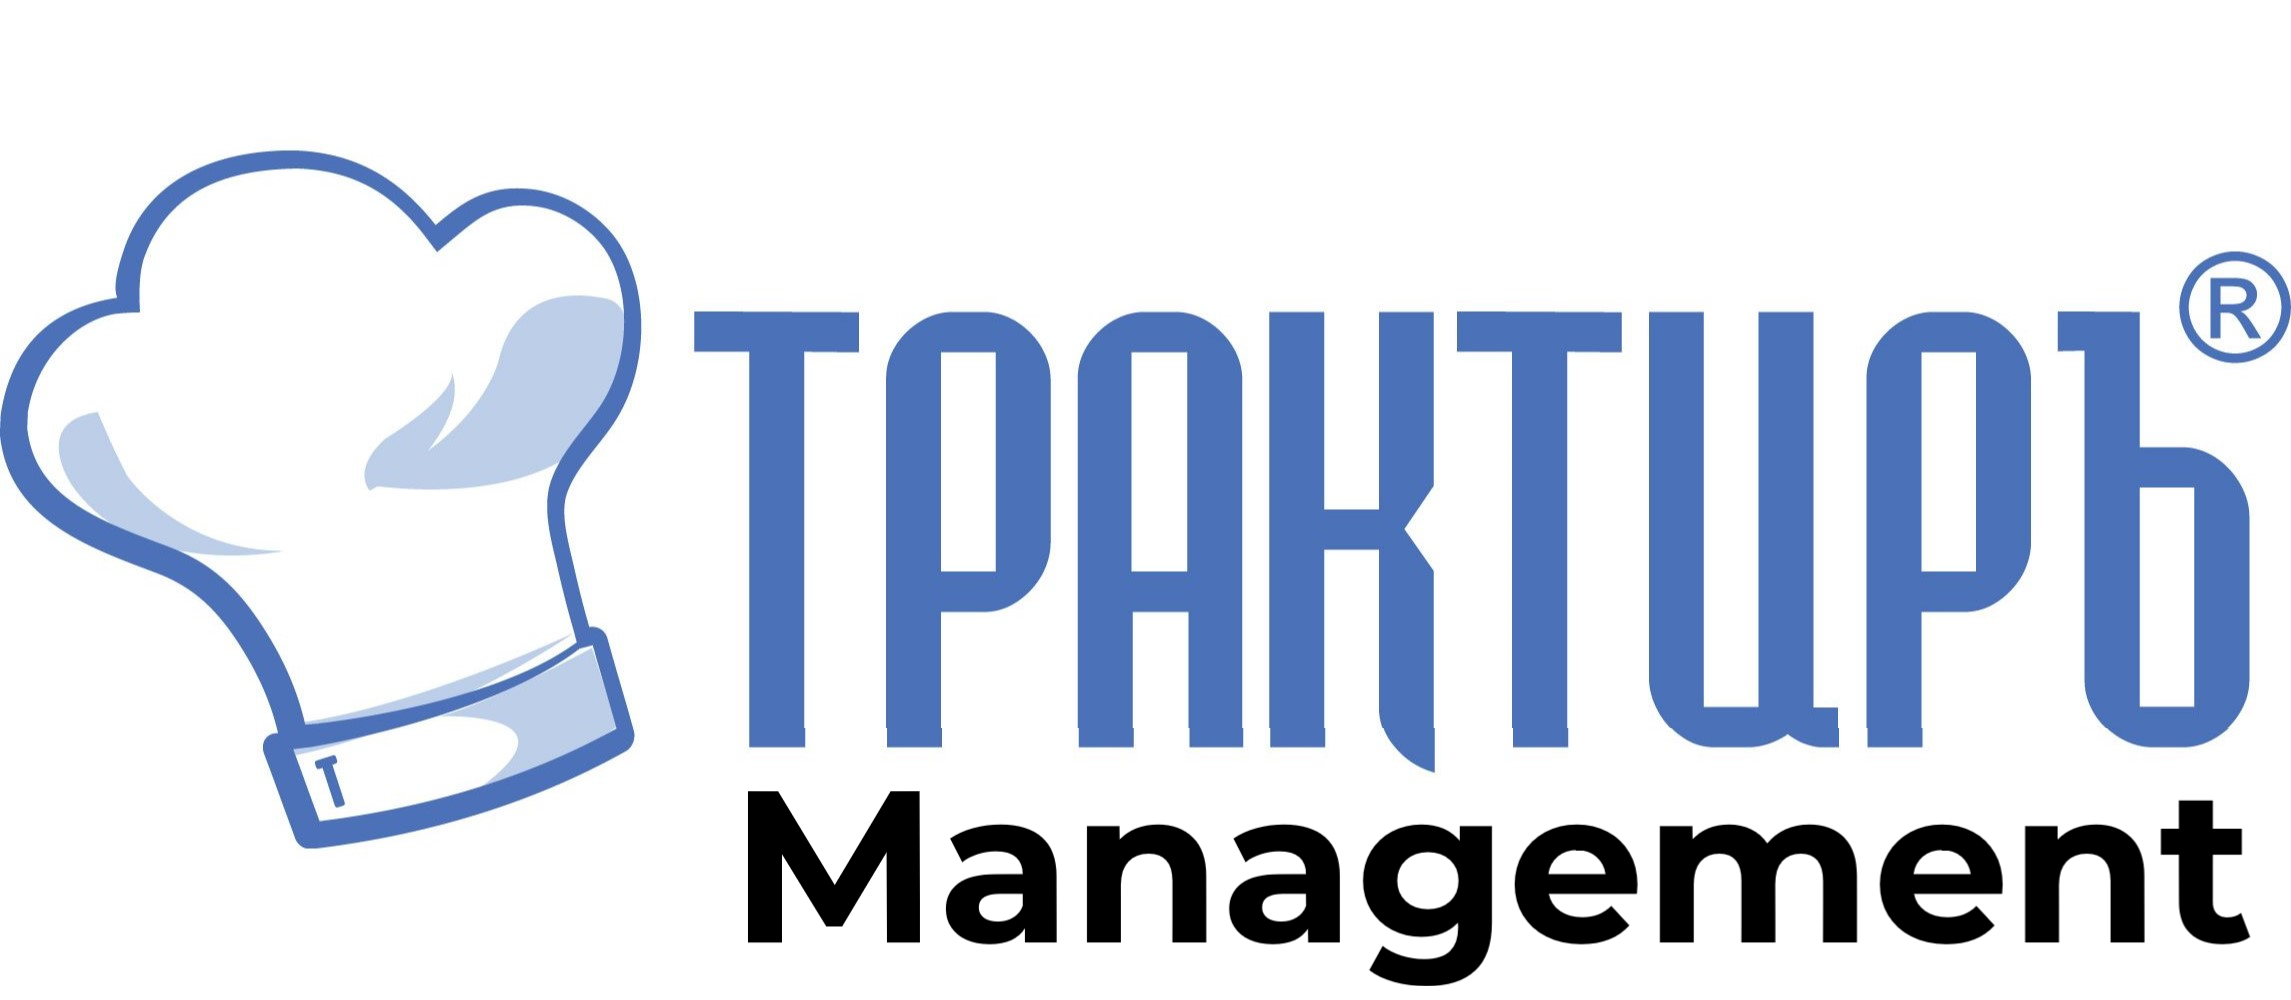 Трактиръ: Management в Барнауле